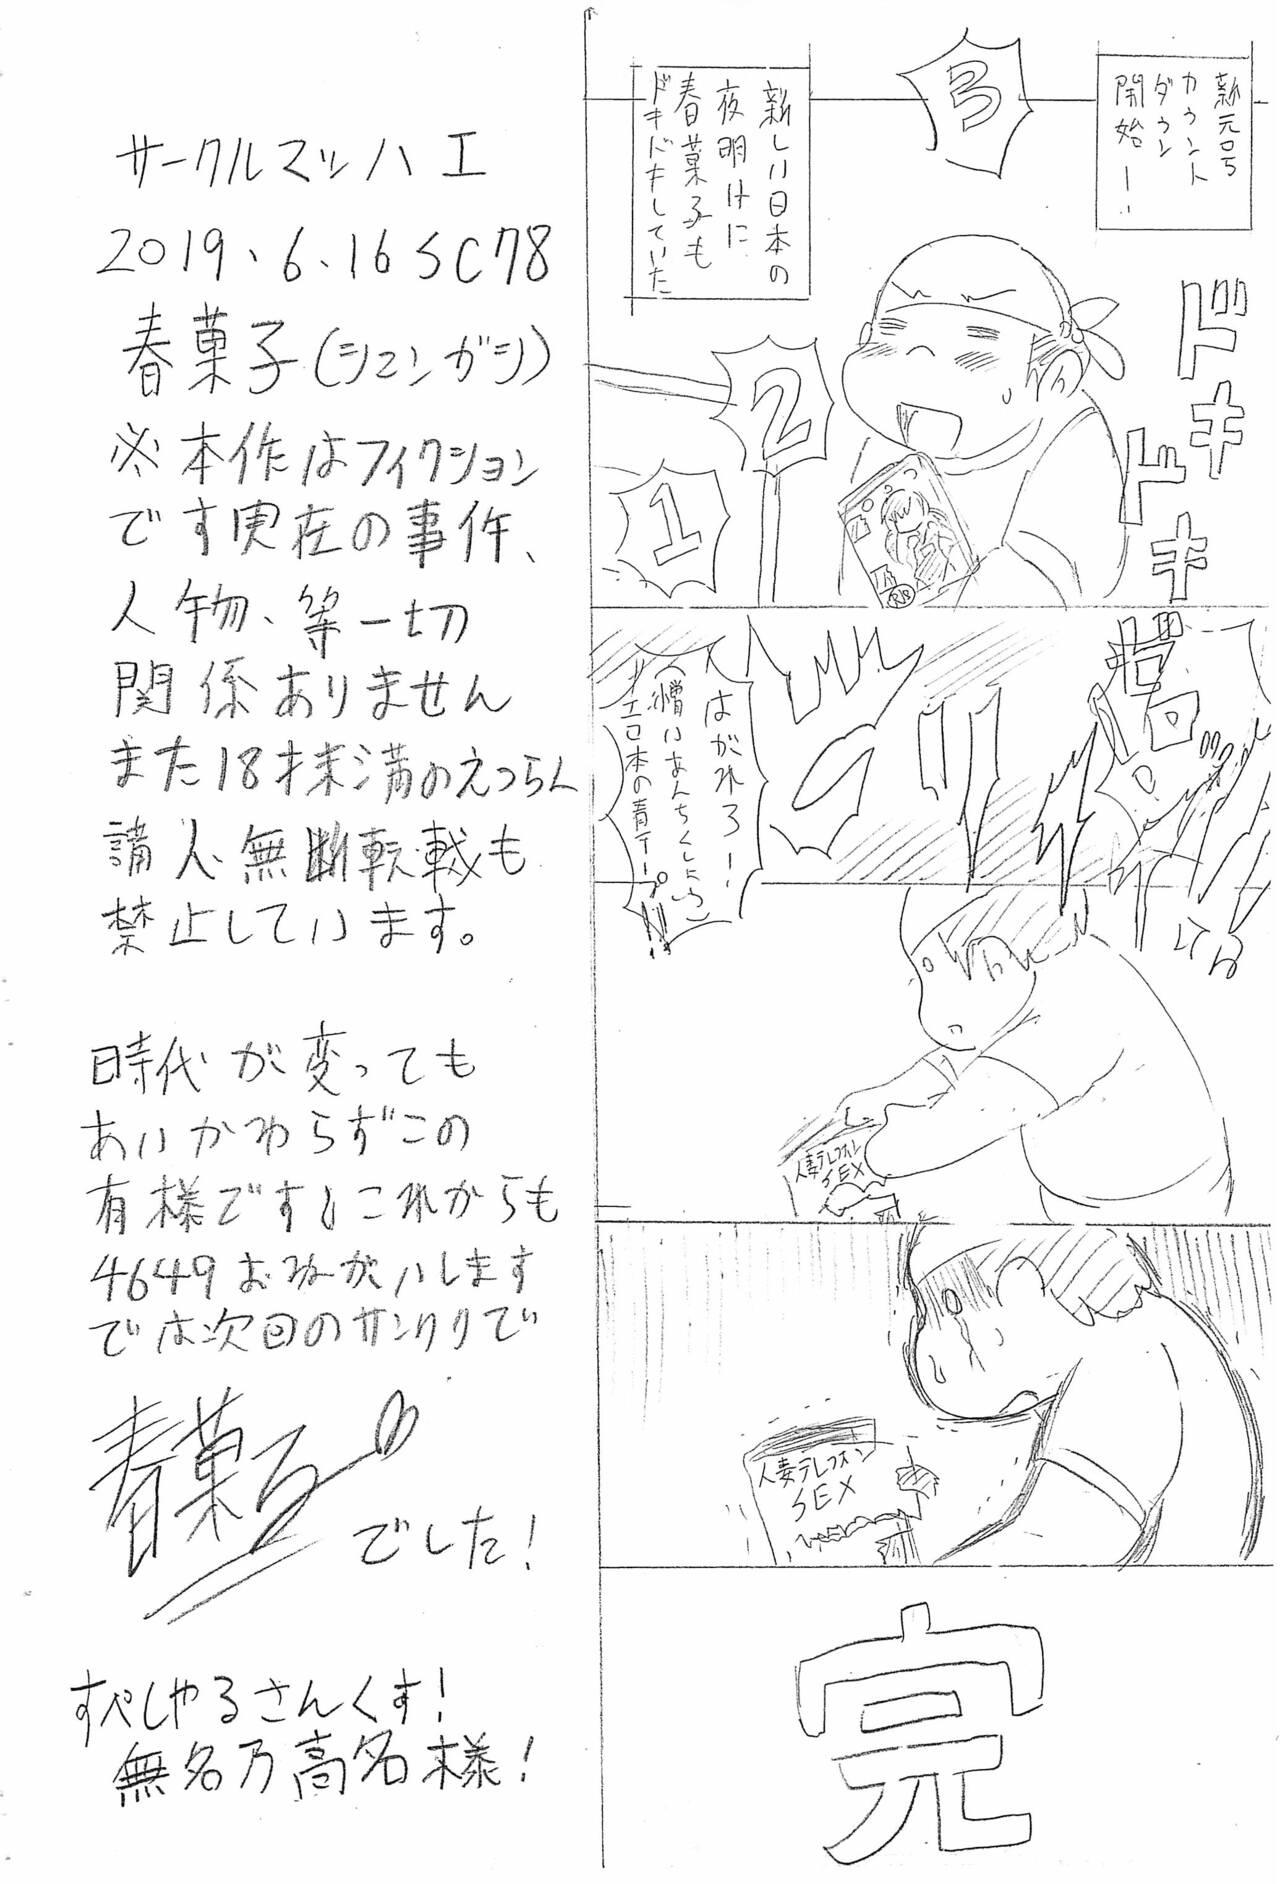 Tats Hanzai Hakusho VOL.56 - Original Putas - Page 16